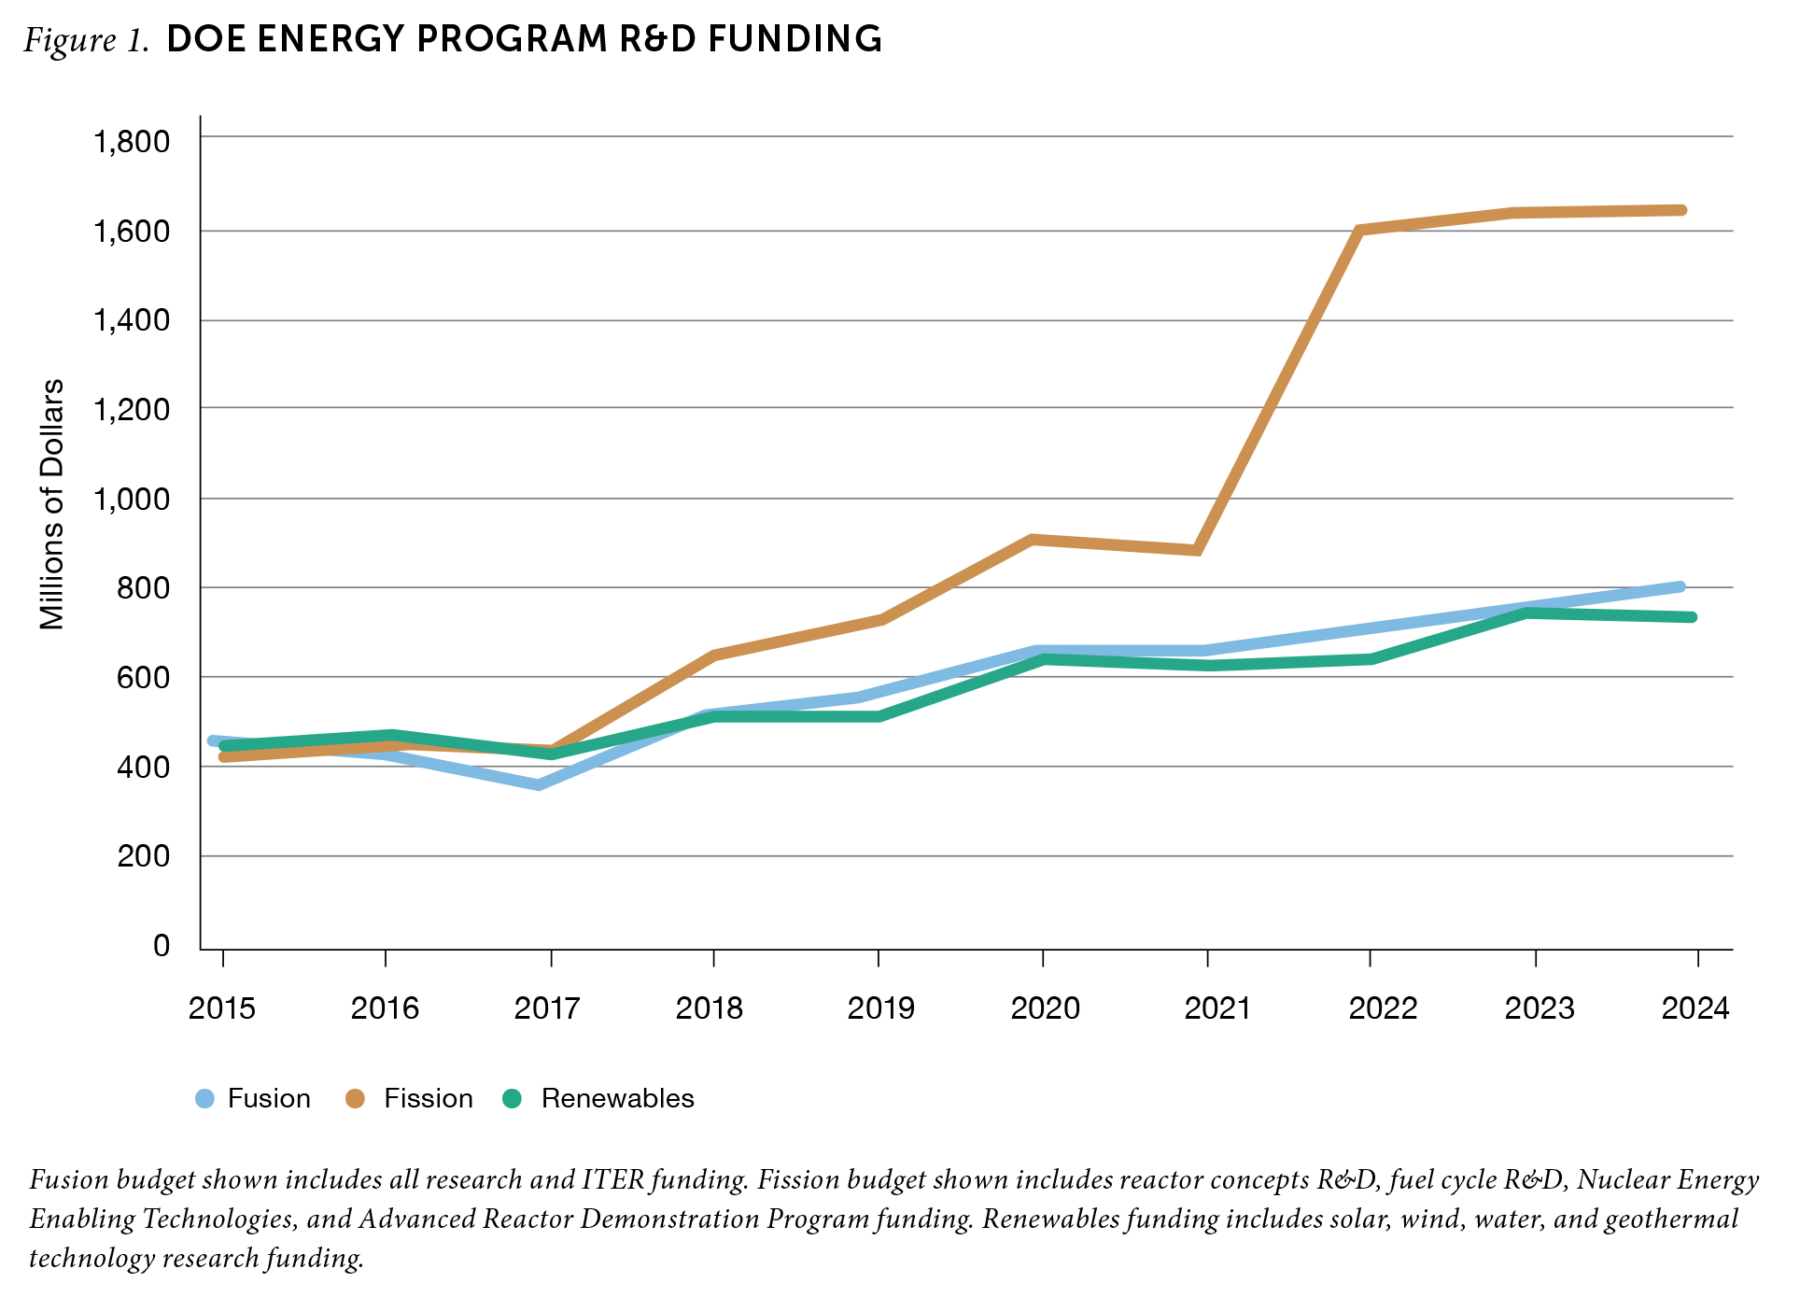 Figure 1. DOE Energy Program R&D Funding